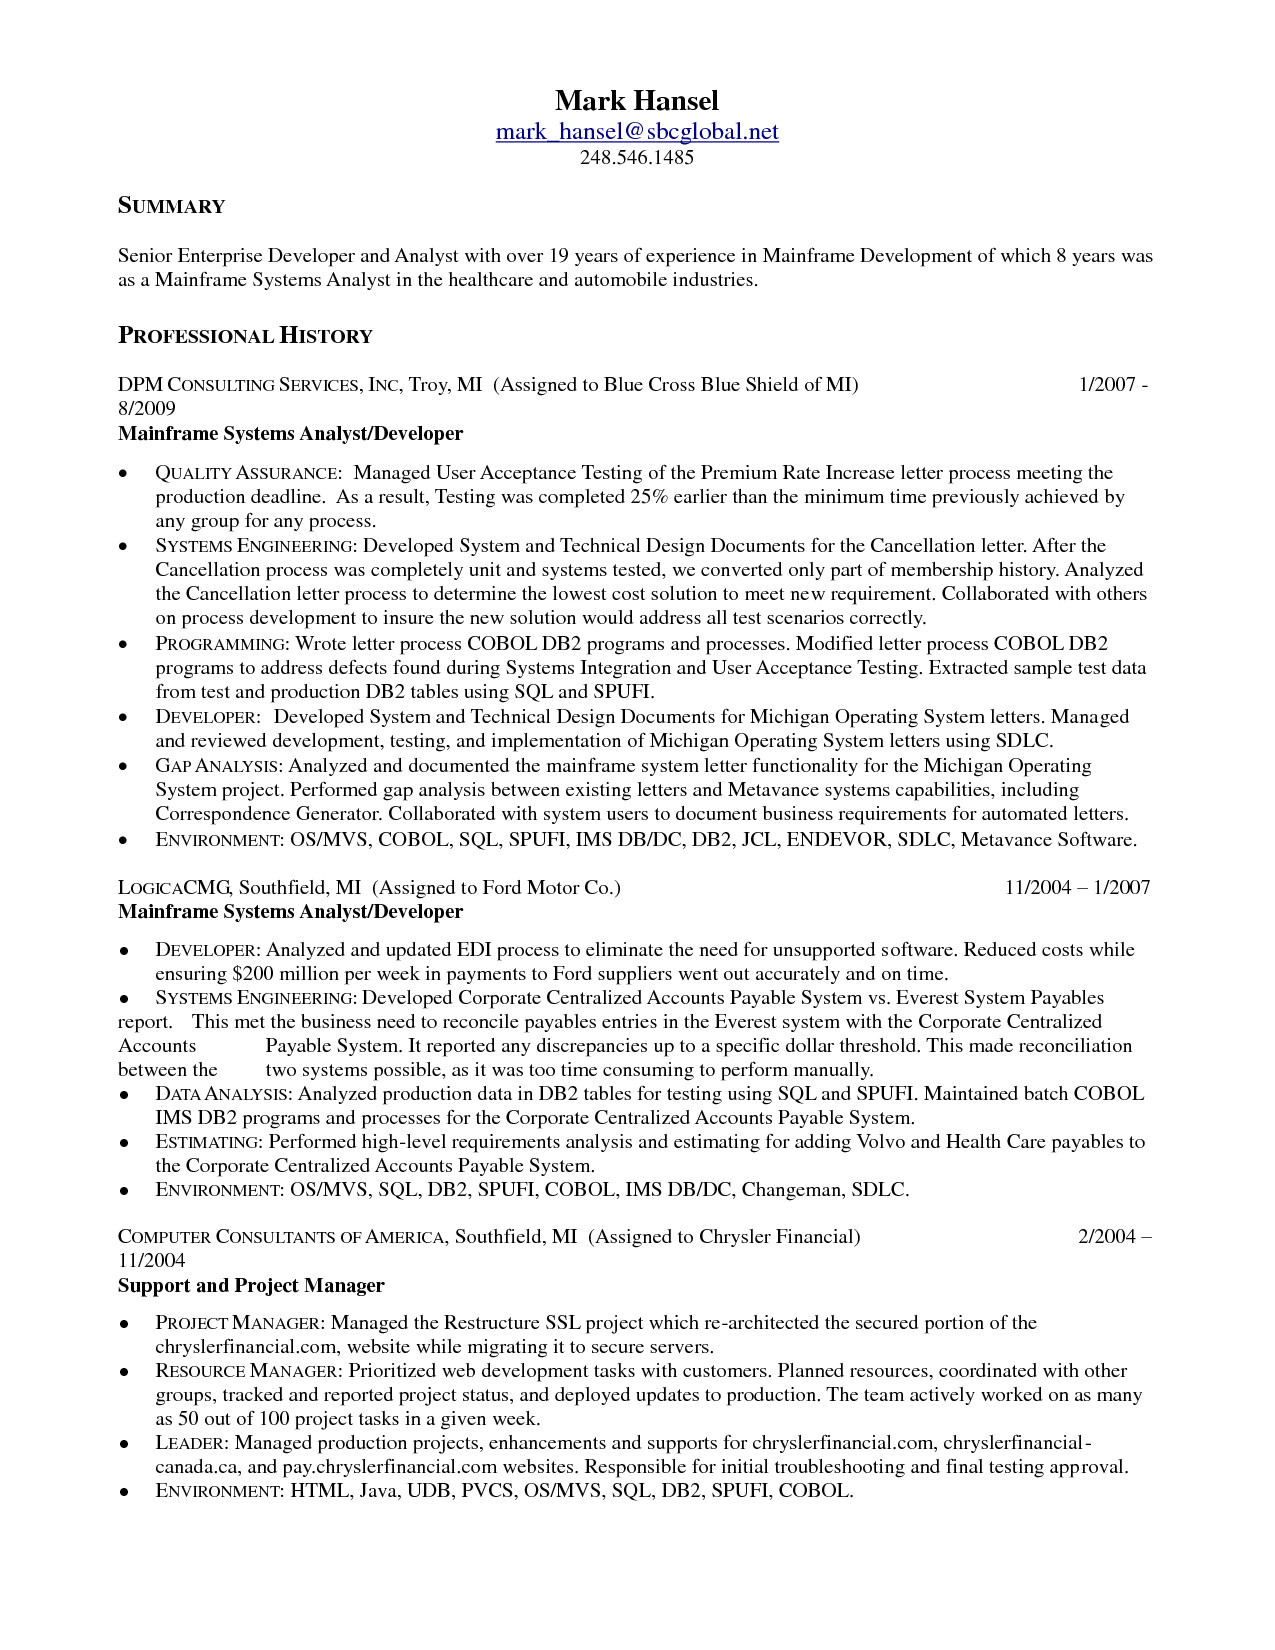 sample resume for experienced mainframe developer